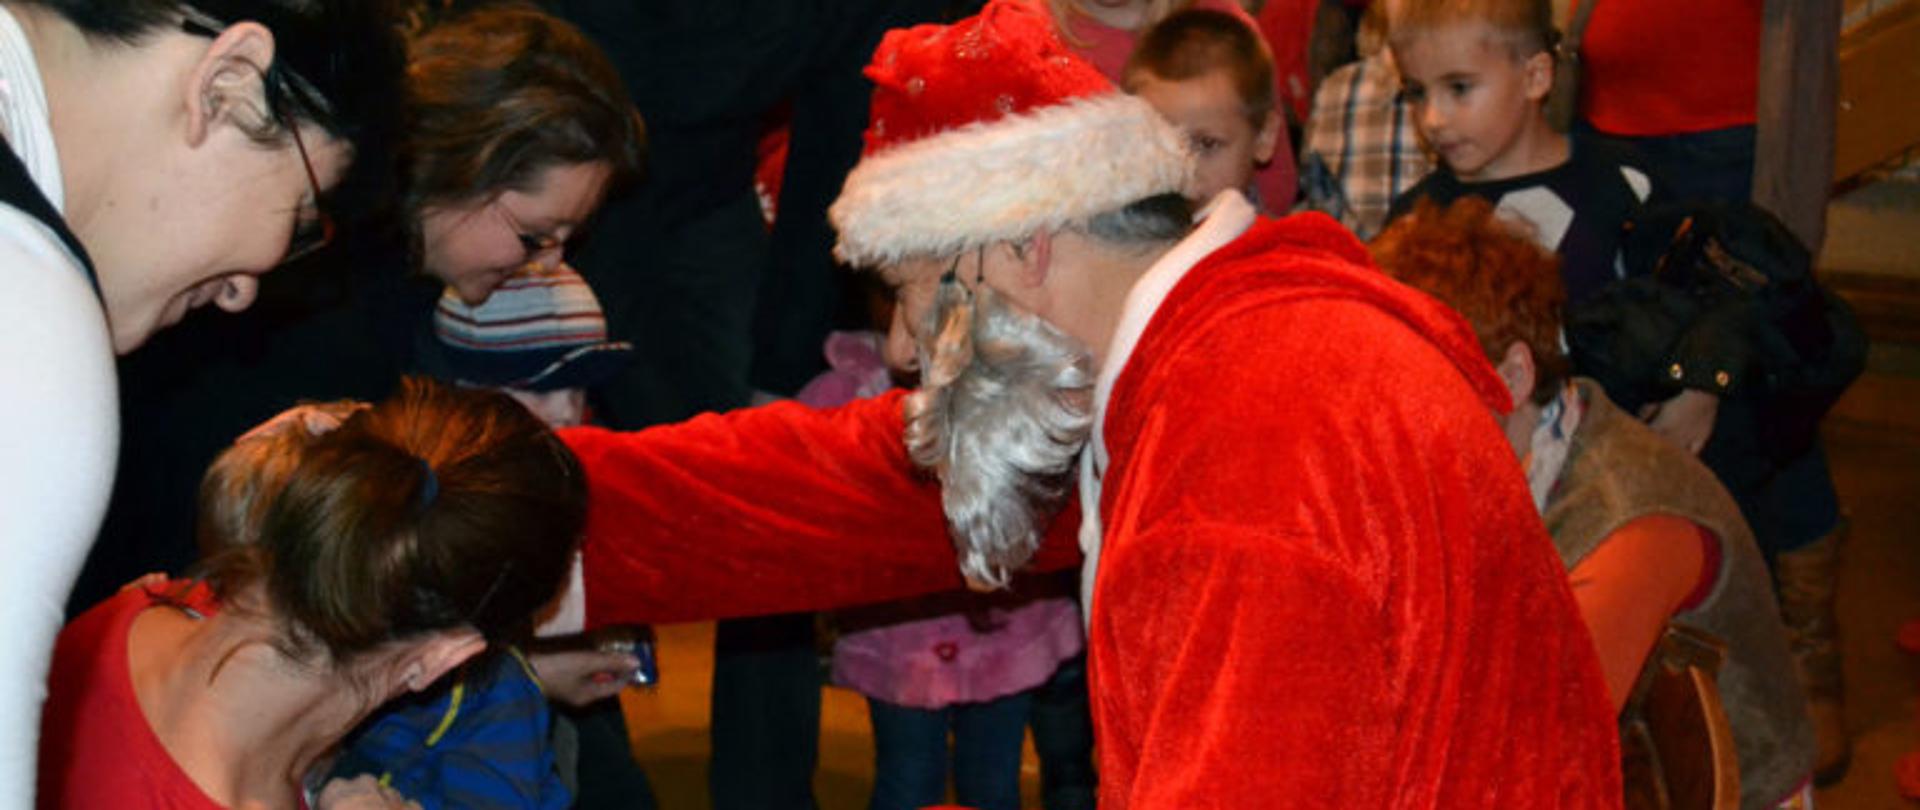 Św. Mikołaj odwiedził dzieci w Kaczorach